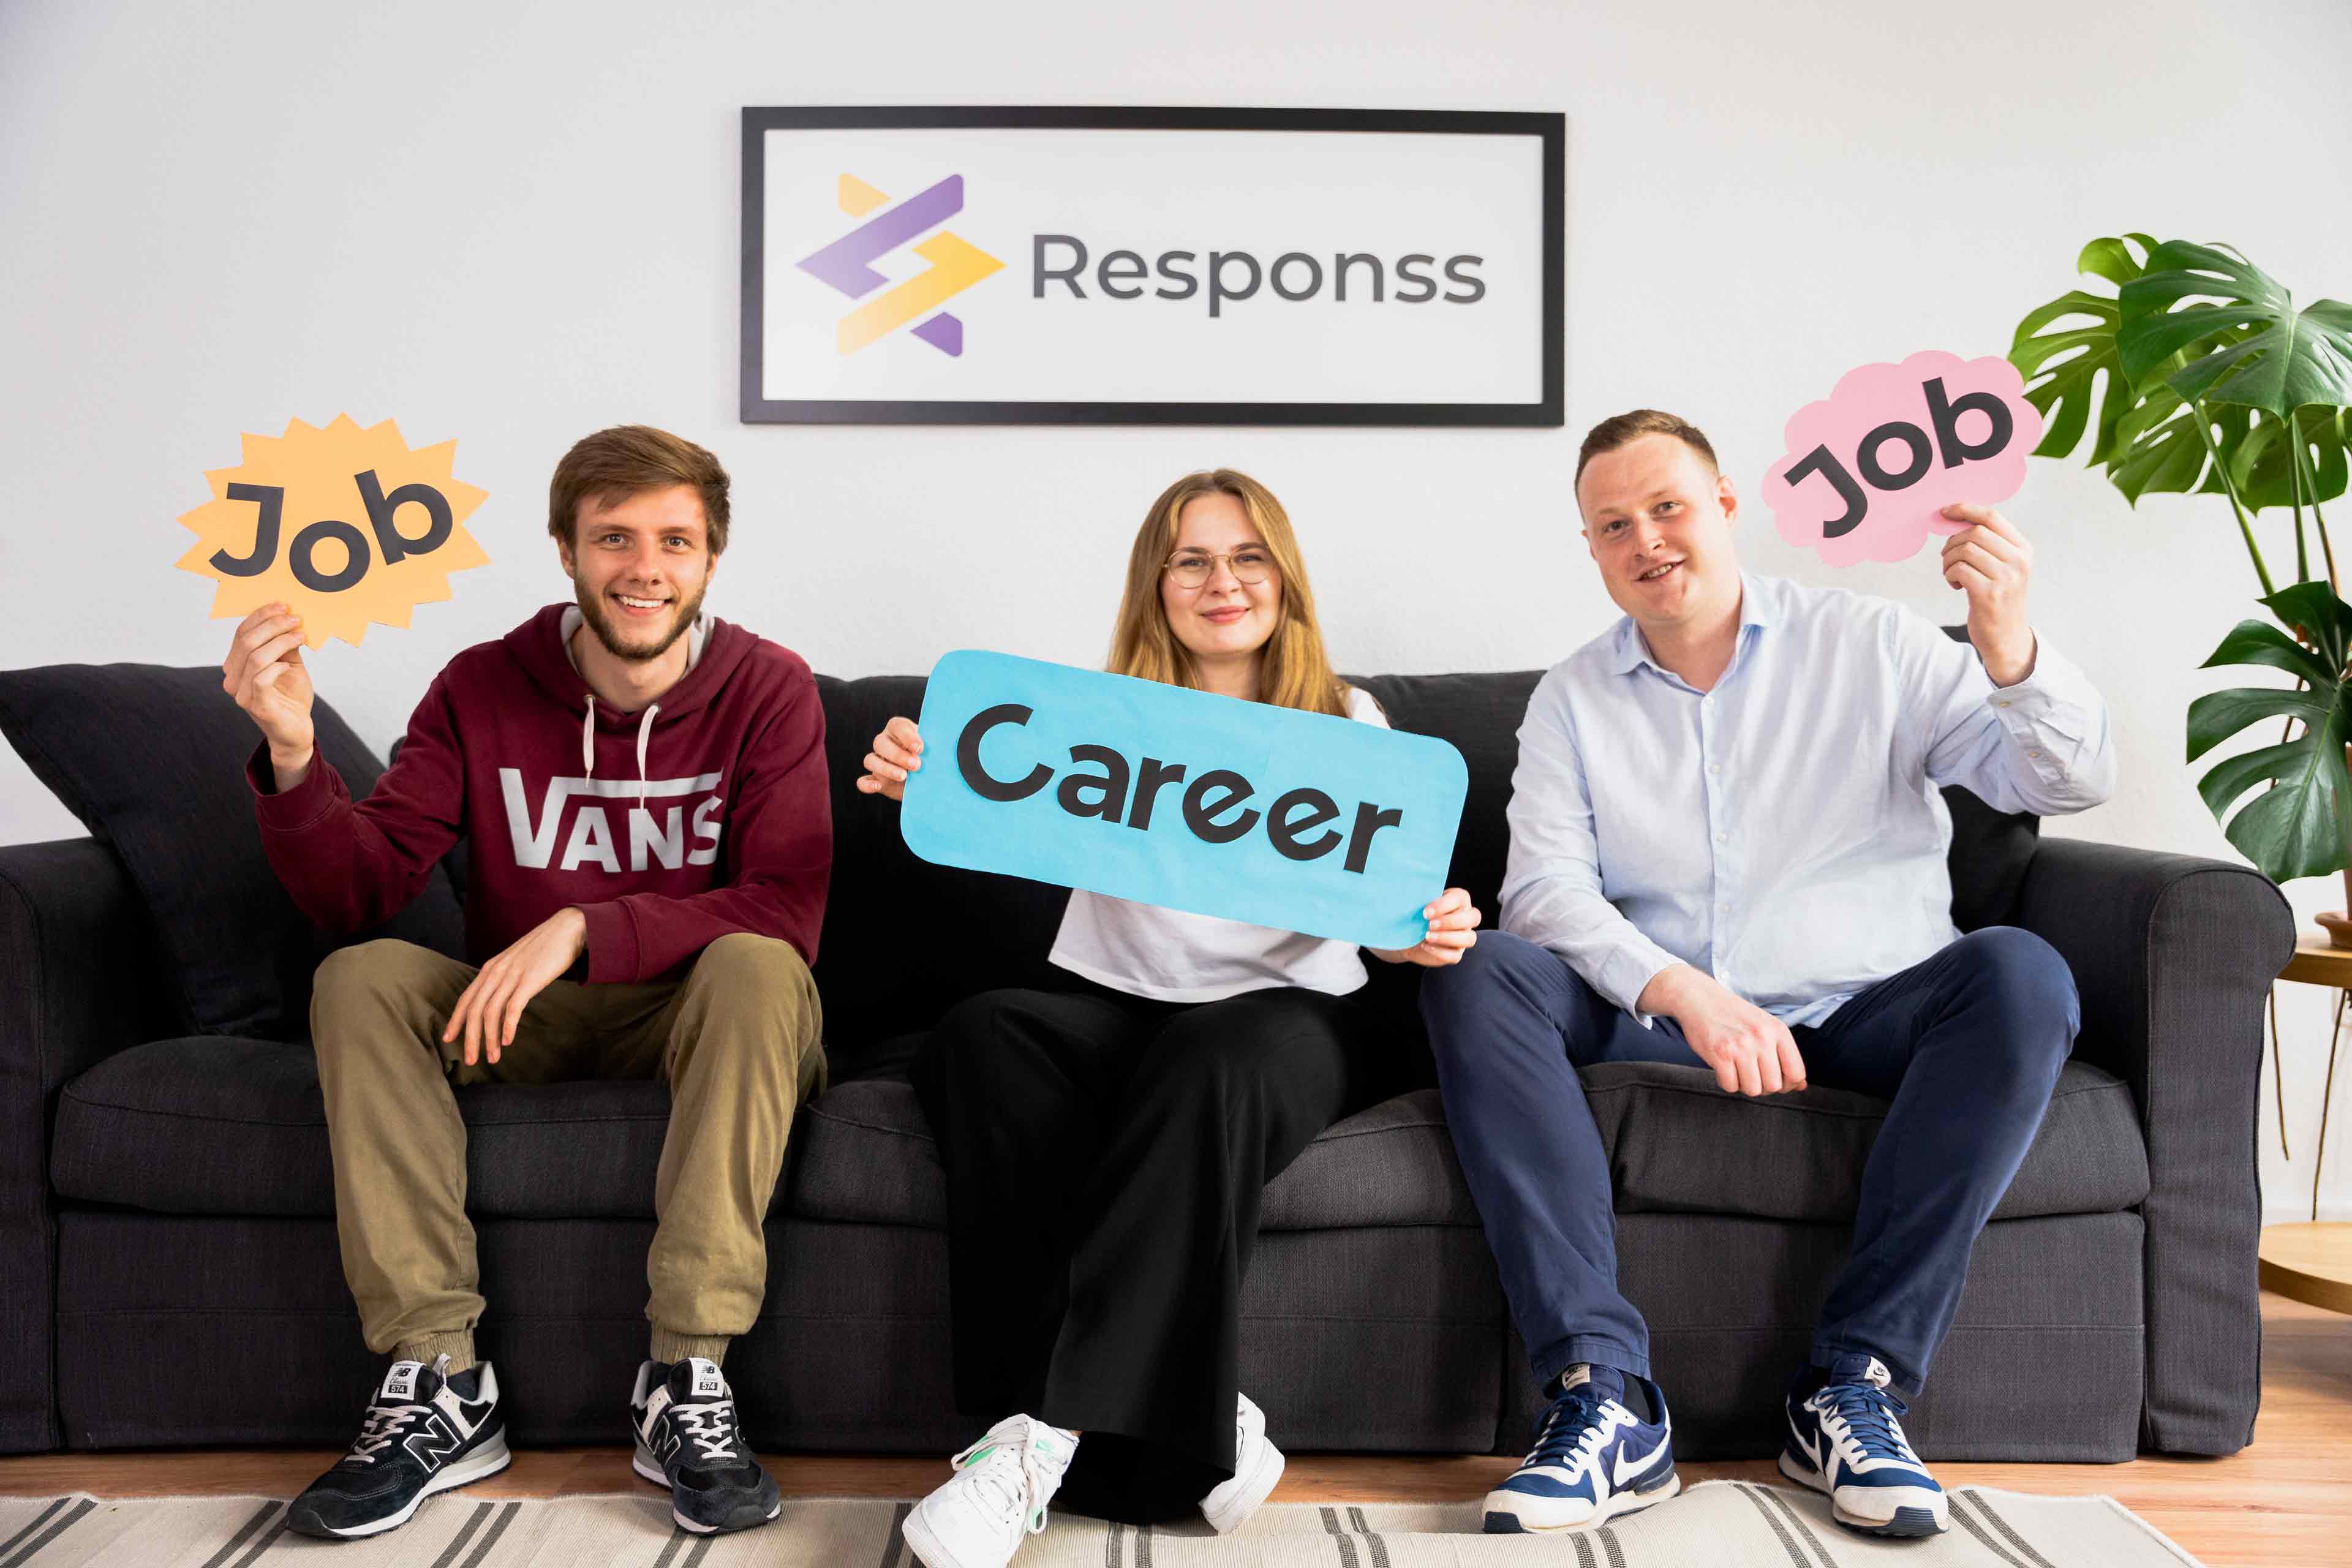 Das Team der Responss GmbH mit Schildern in der Hand, auf denen Job und Career geschrieben ist